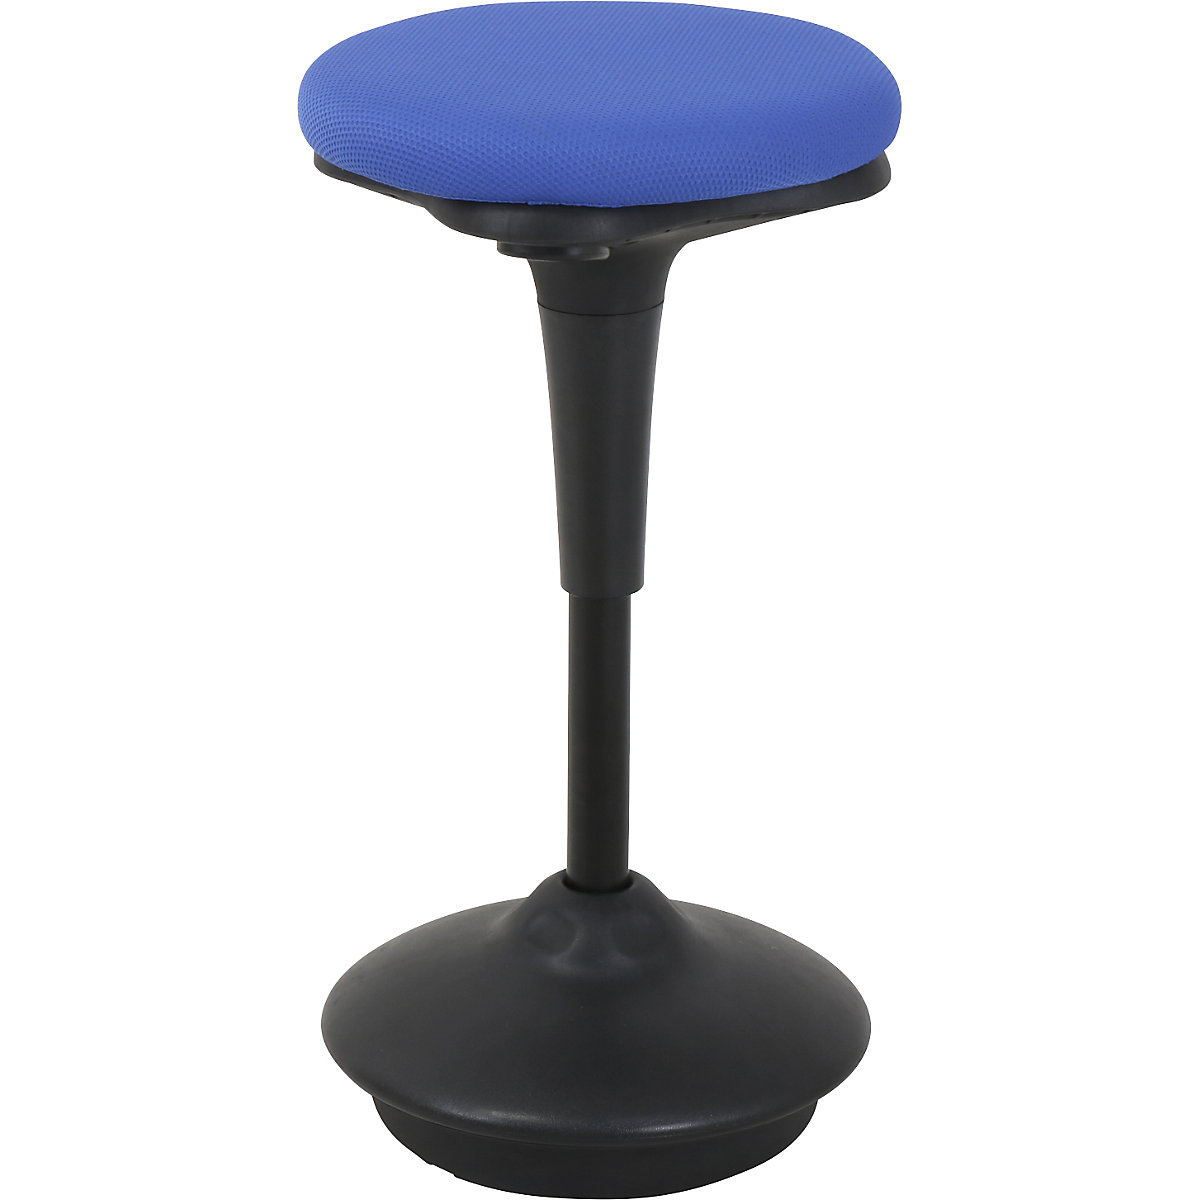 Twinco – Opora pro stání 6131, kruhový sedák, Ø 340 mm, potah modrá